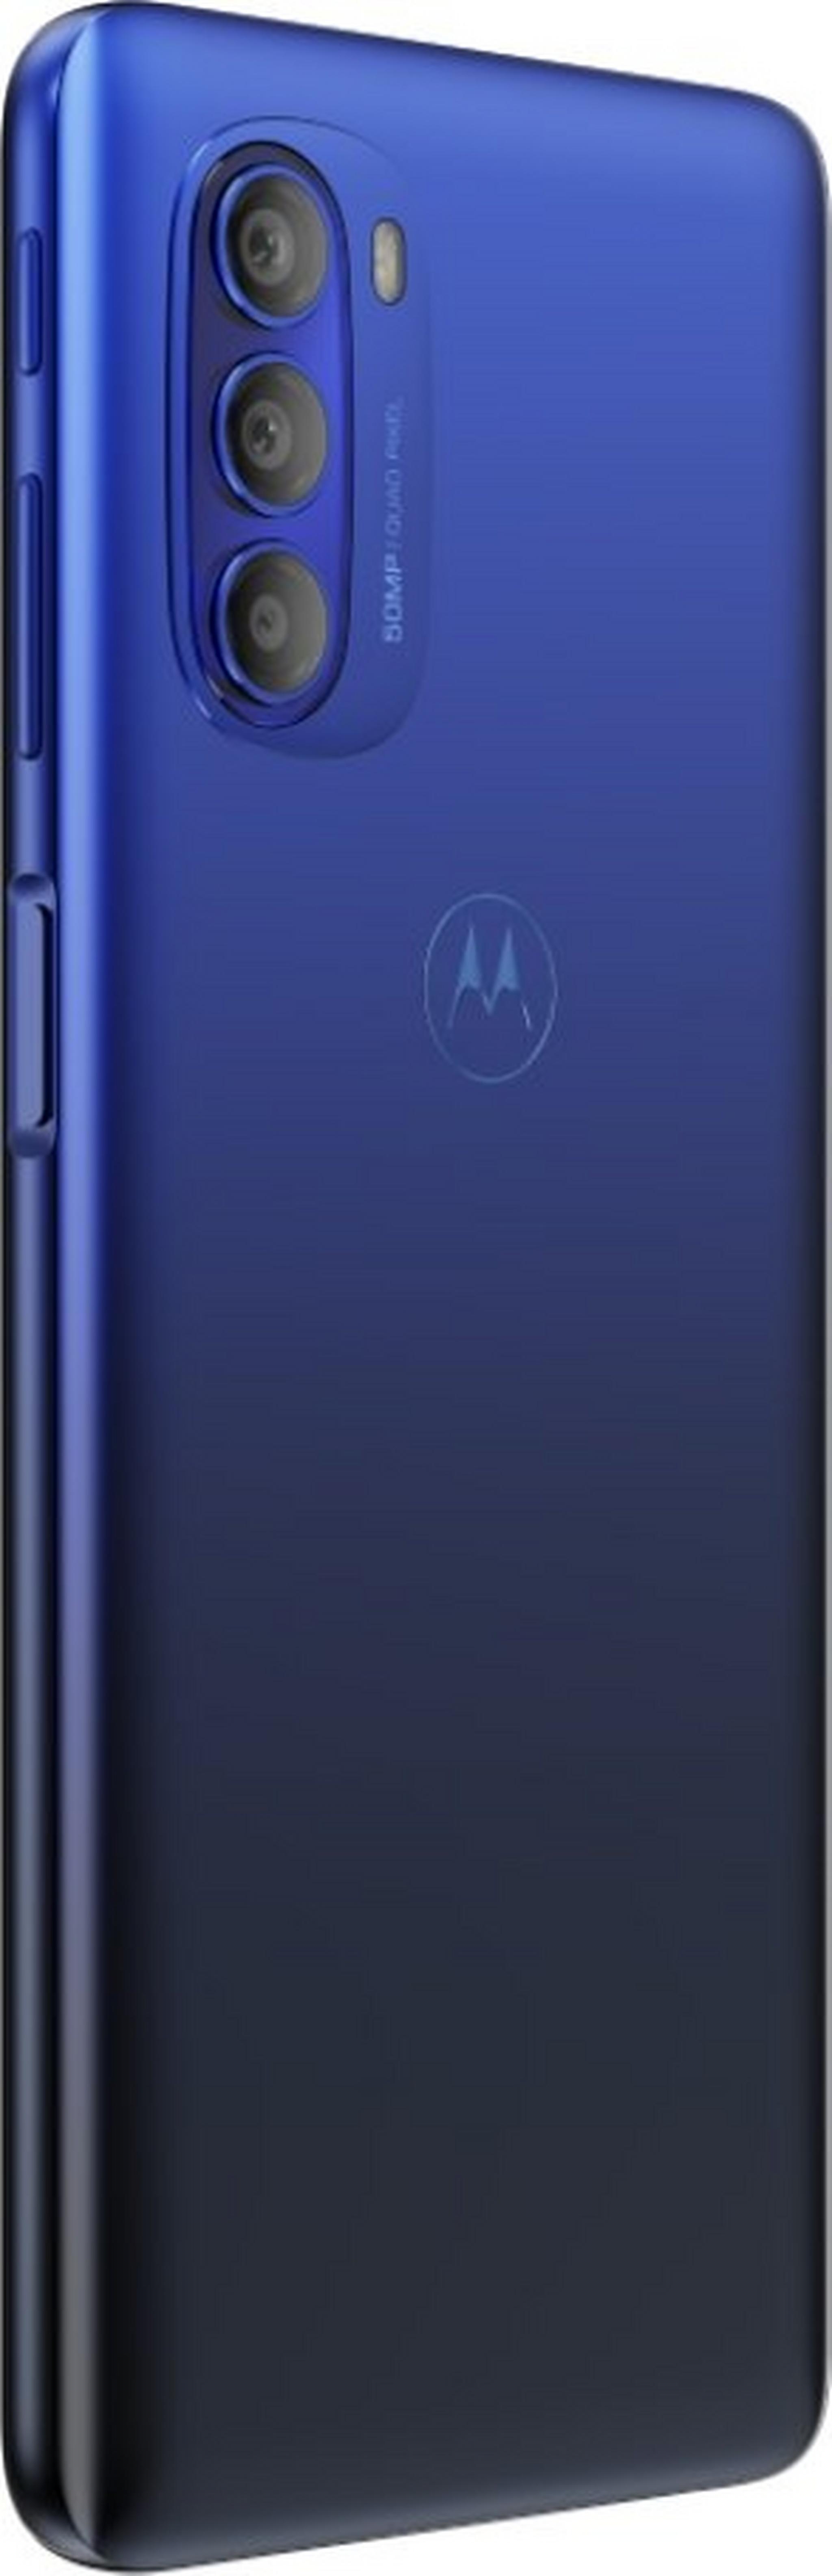 هاتف موتورولا موتو جي 51 بسعة 128 جيجابايت - أزرق